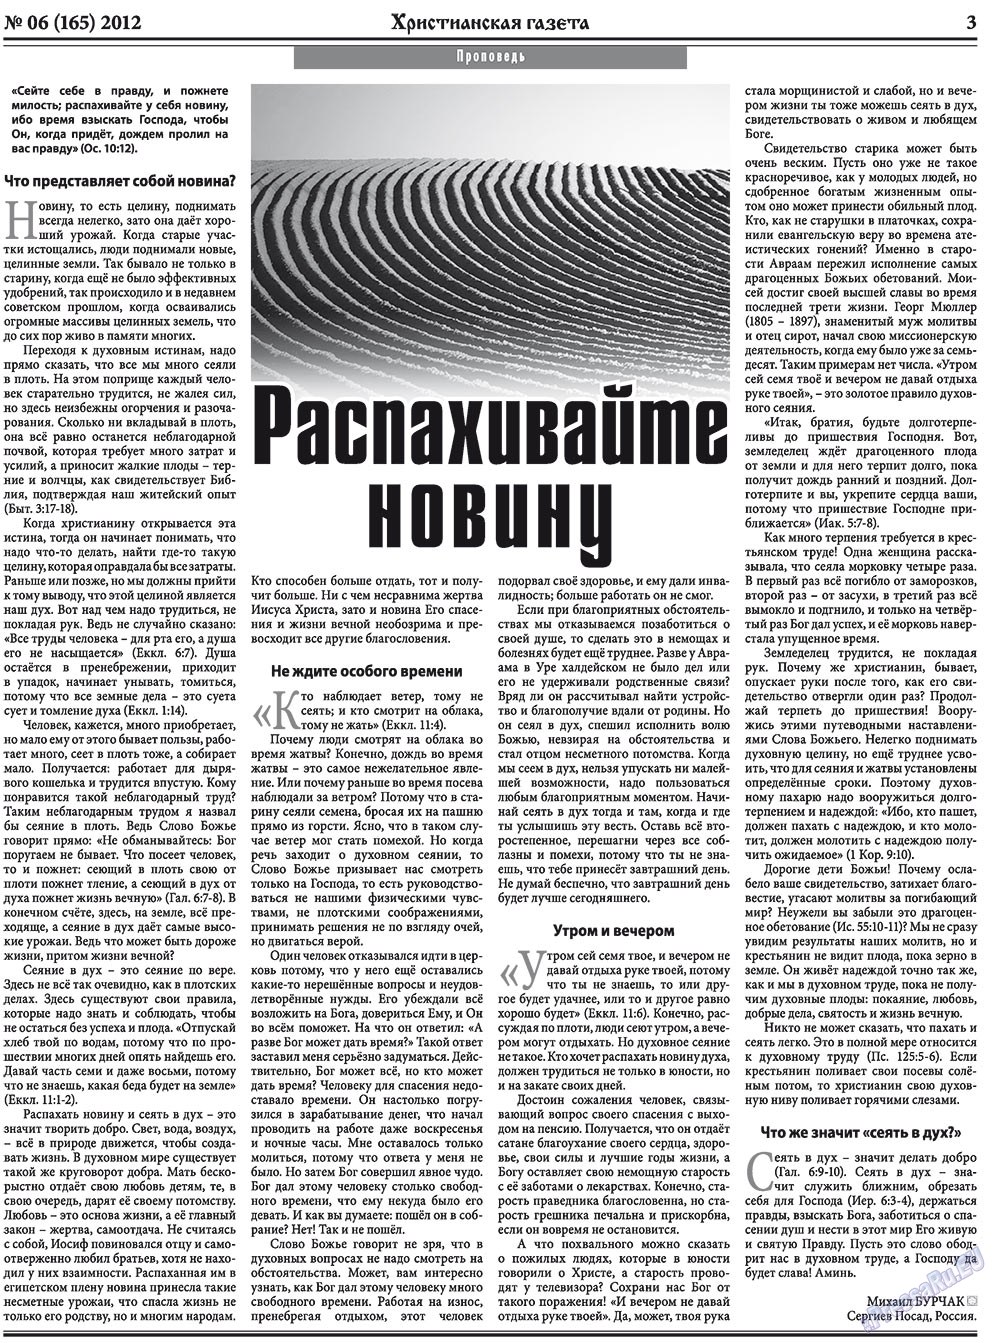 Христианская газета, газета. 2012 №6 стр.3